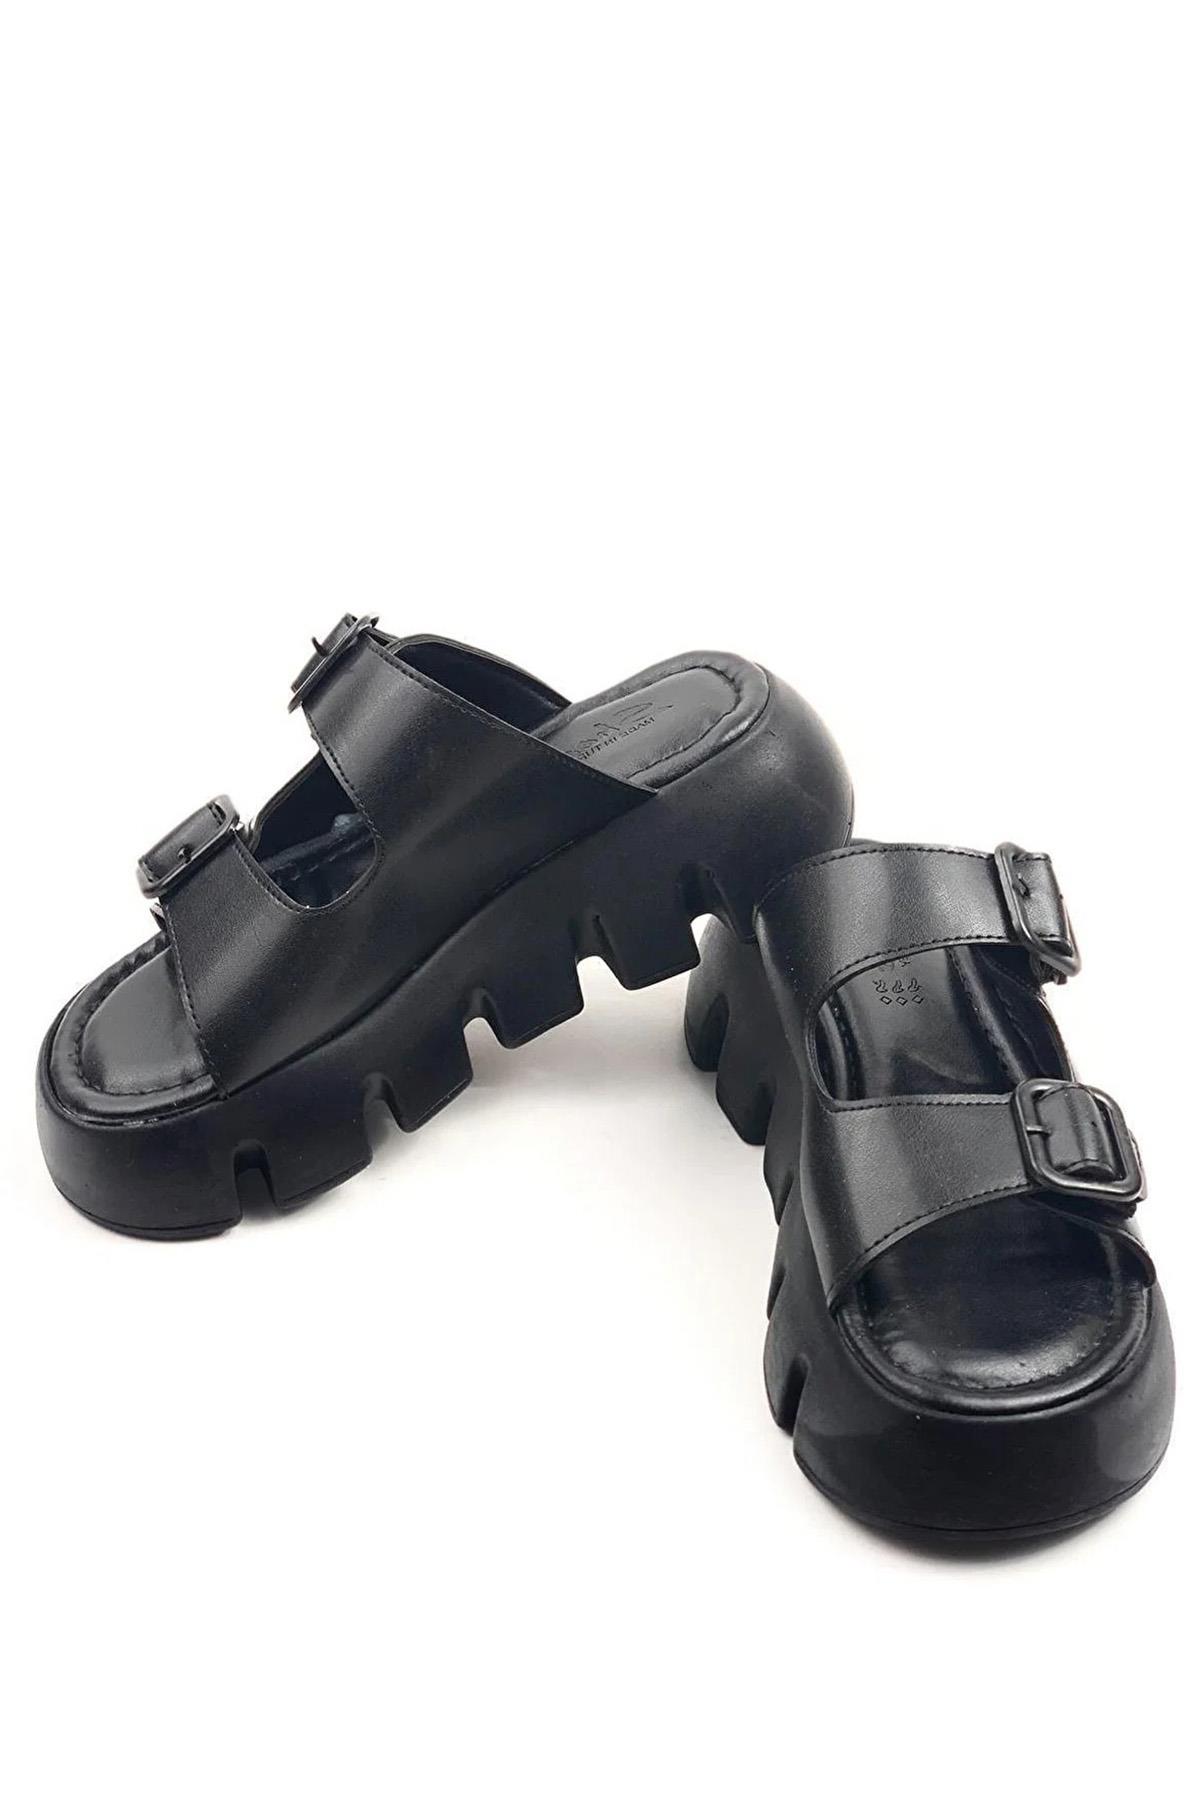 Kadın Sero Siyah Çift Bant Kalın Taban Ortopedik Sandalet Terlik